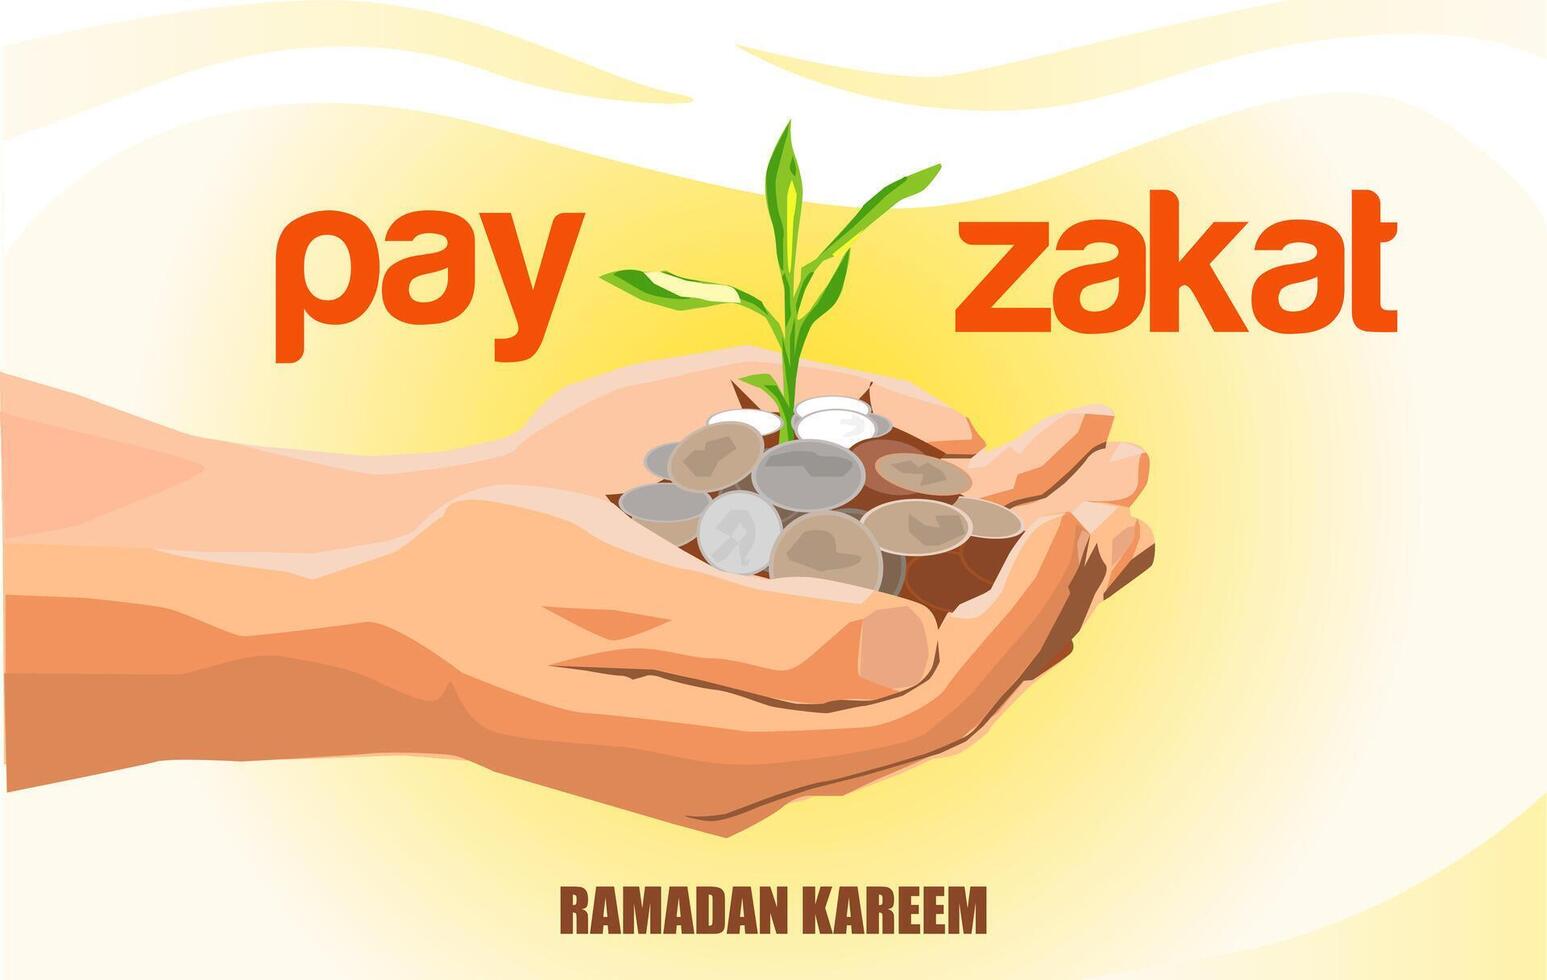 Vektor Pflanzen Münzen Geld Pflanze Saat durch geben Zahlen zakat mit Hände im Ramadan kareem